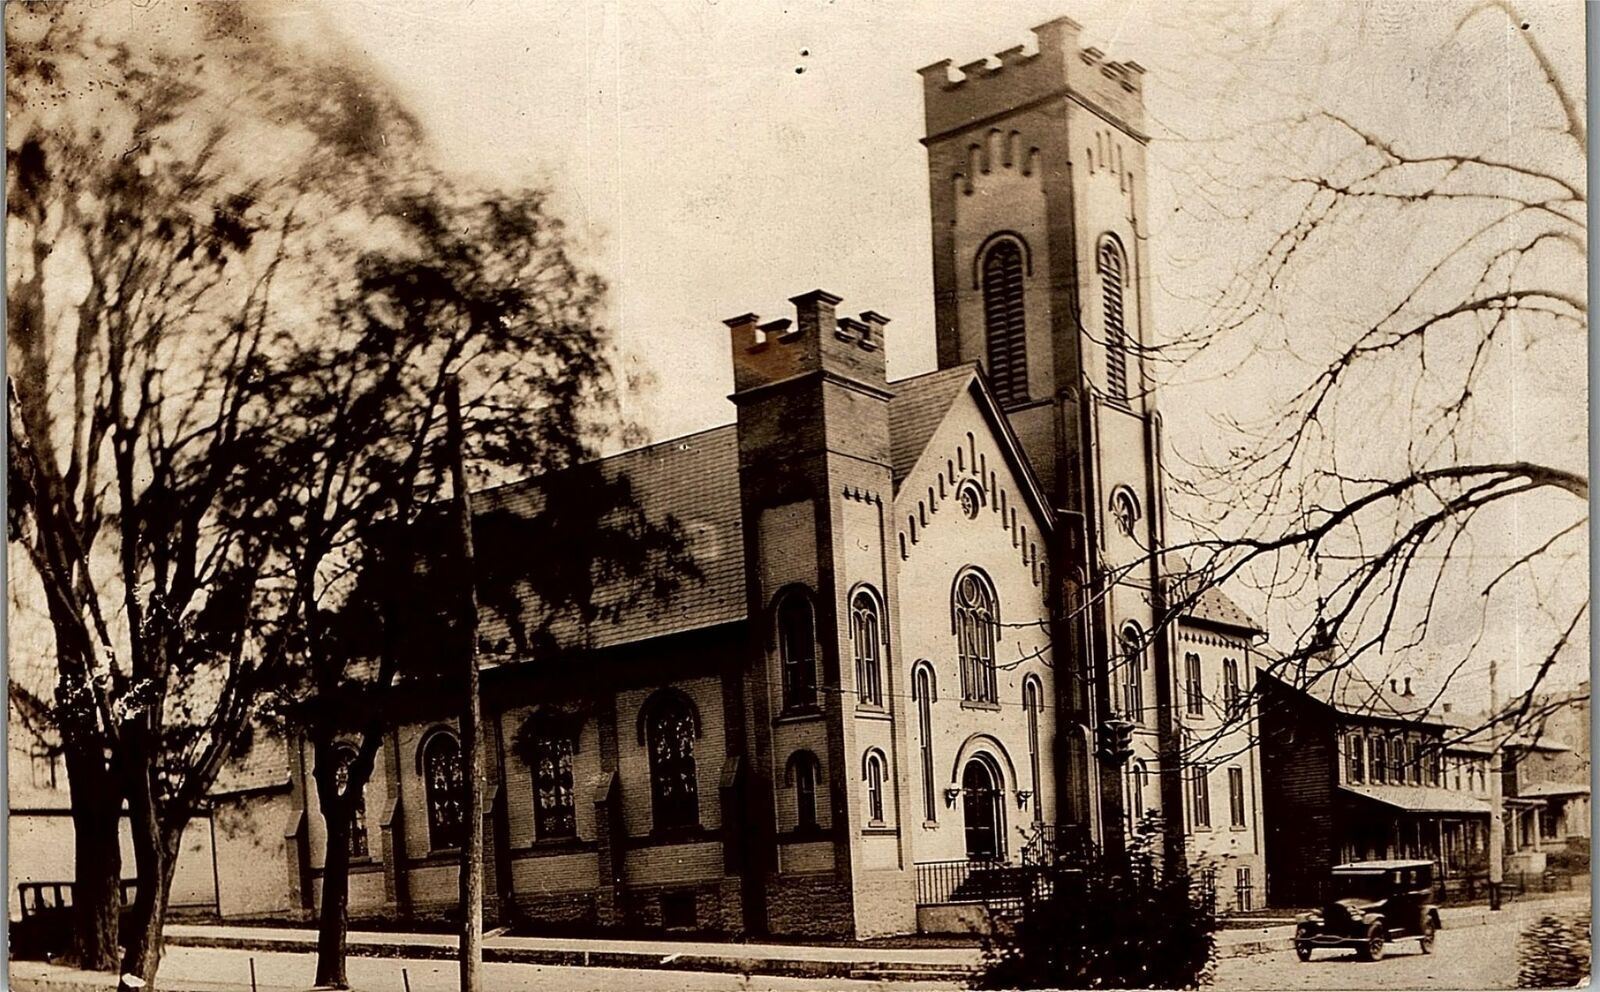 1931 STILES PENNSYLVANIA CHURCH AUTOMOBILES STREET VIEW RPPC POSTCARD 36-191